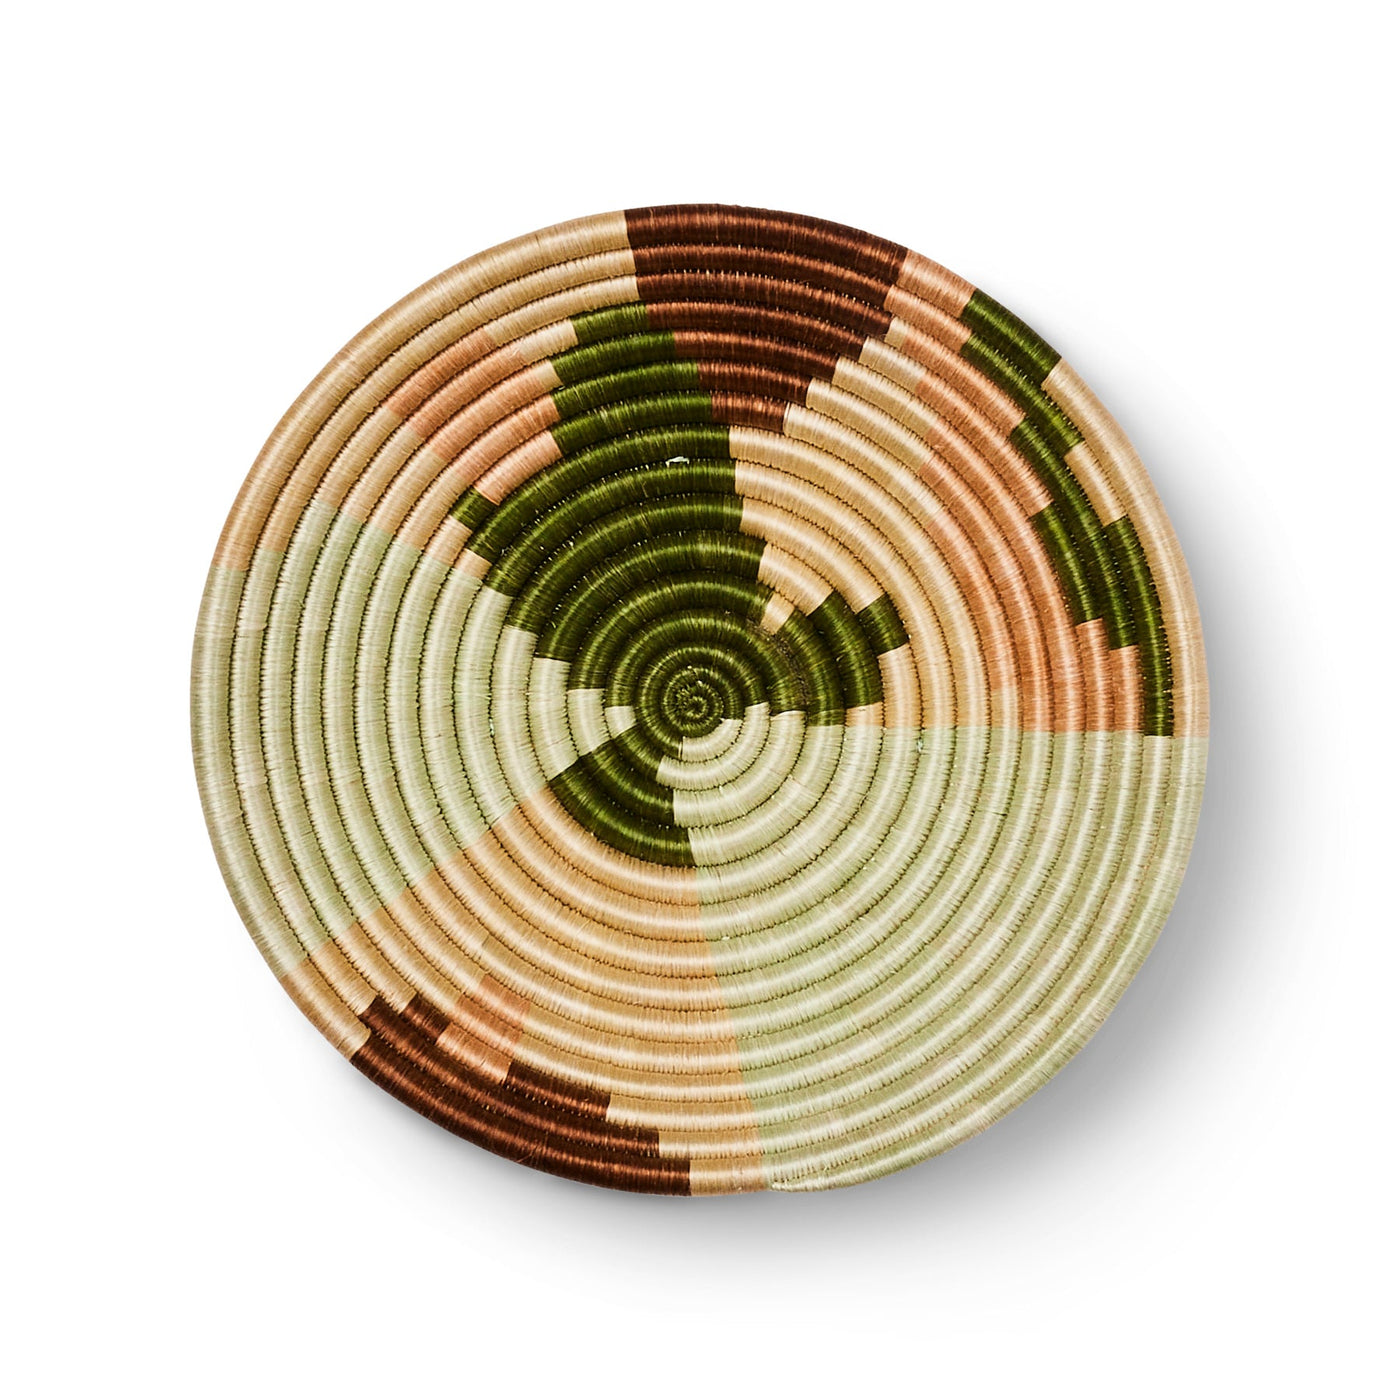 12" Bowl - Restorative Greens, Abstract